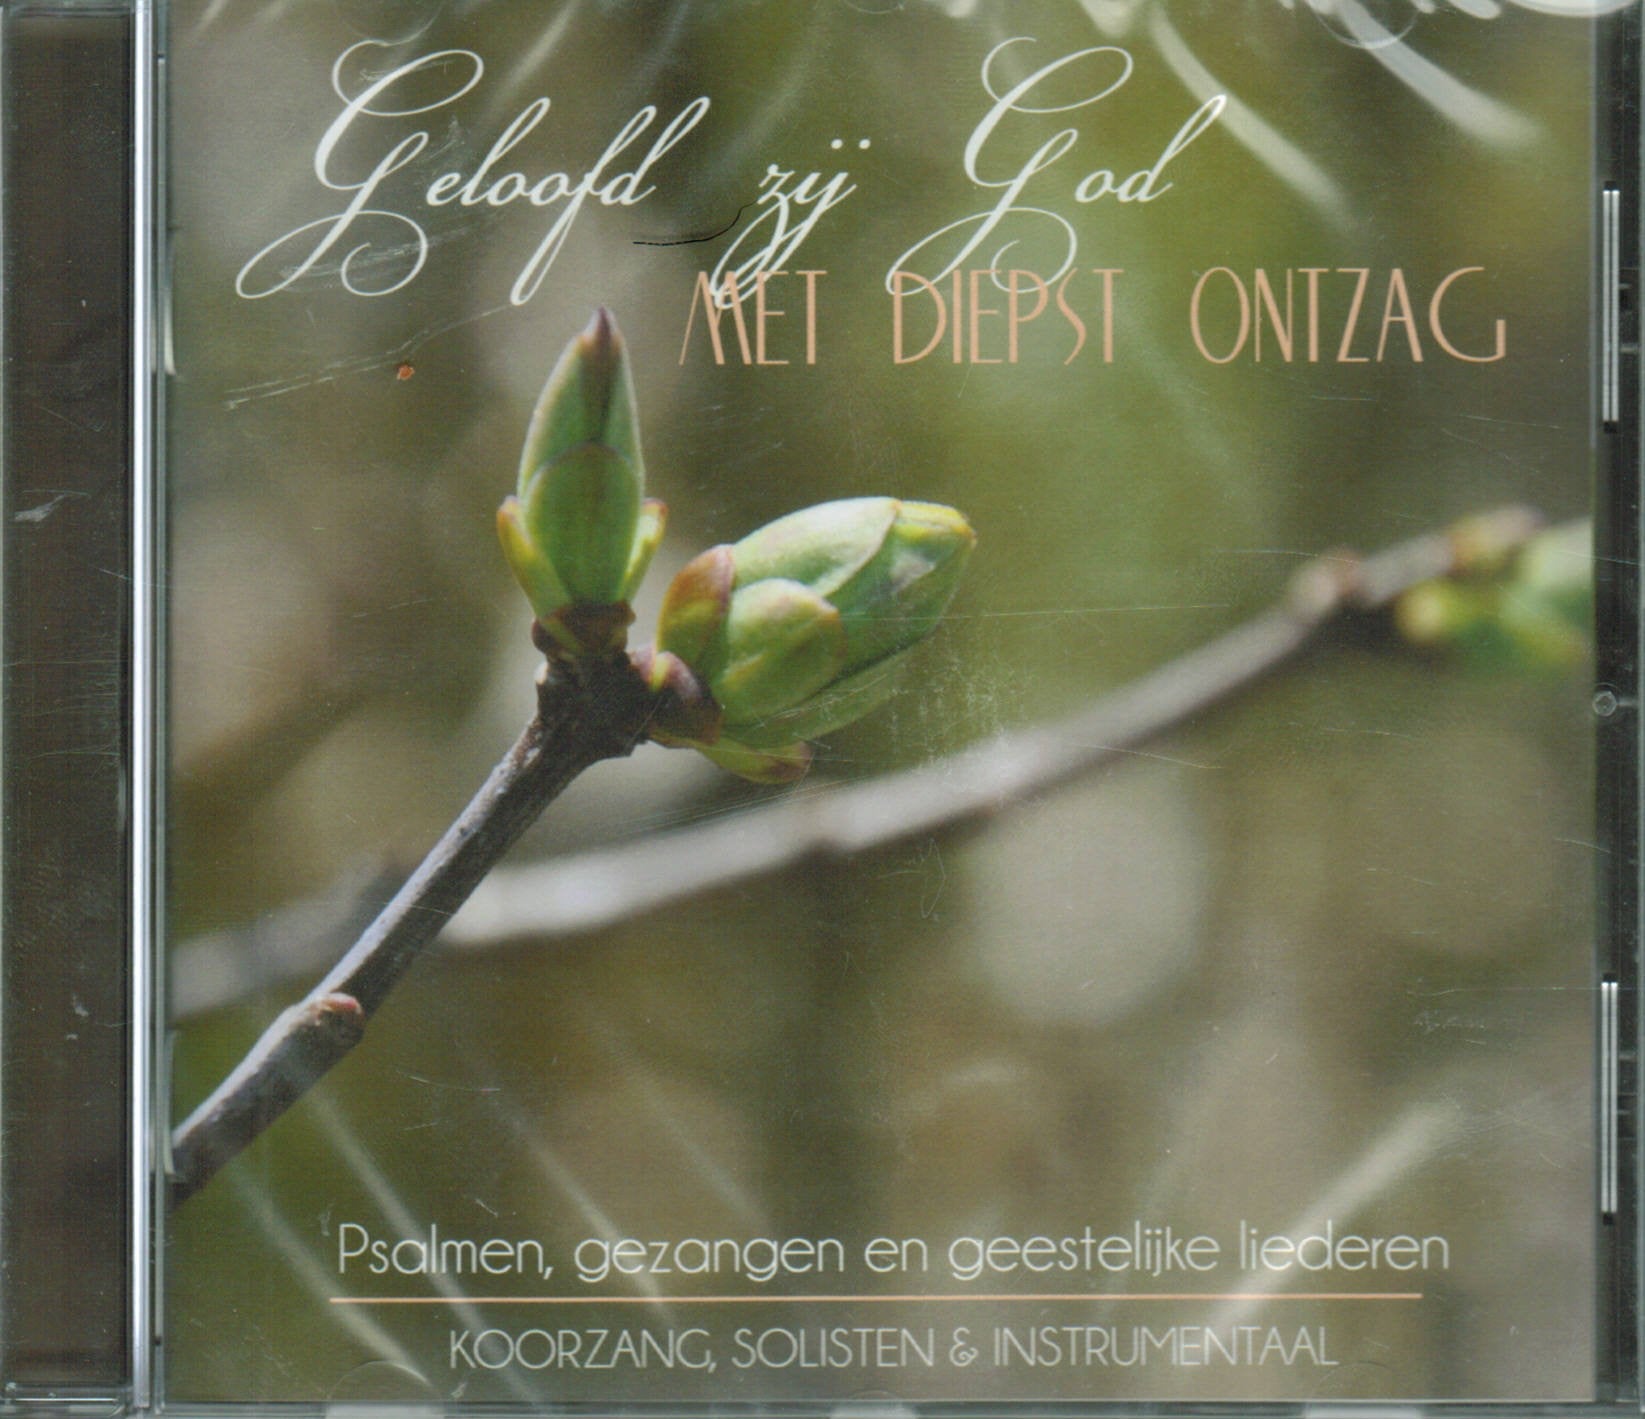 Dutch CD: Geloofd zij God Met Deipst Ontzag